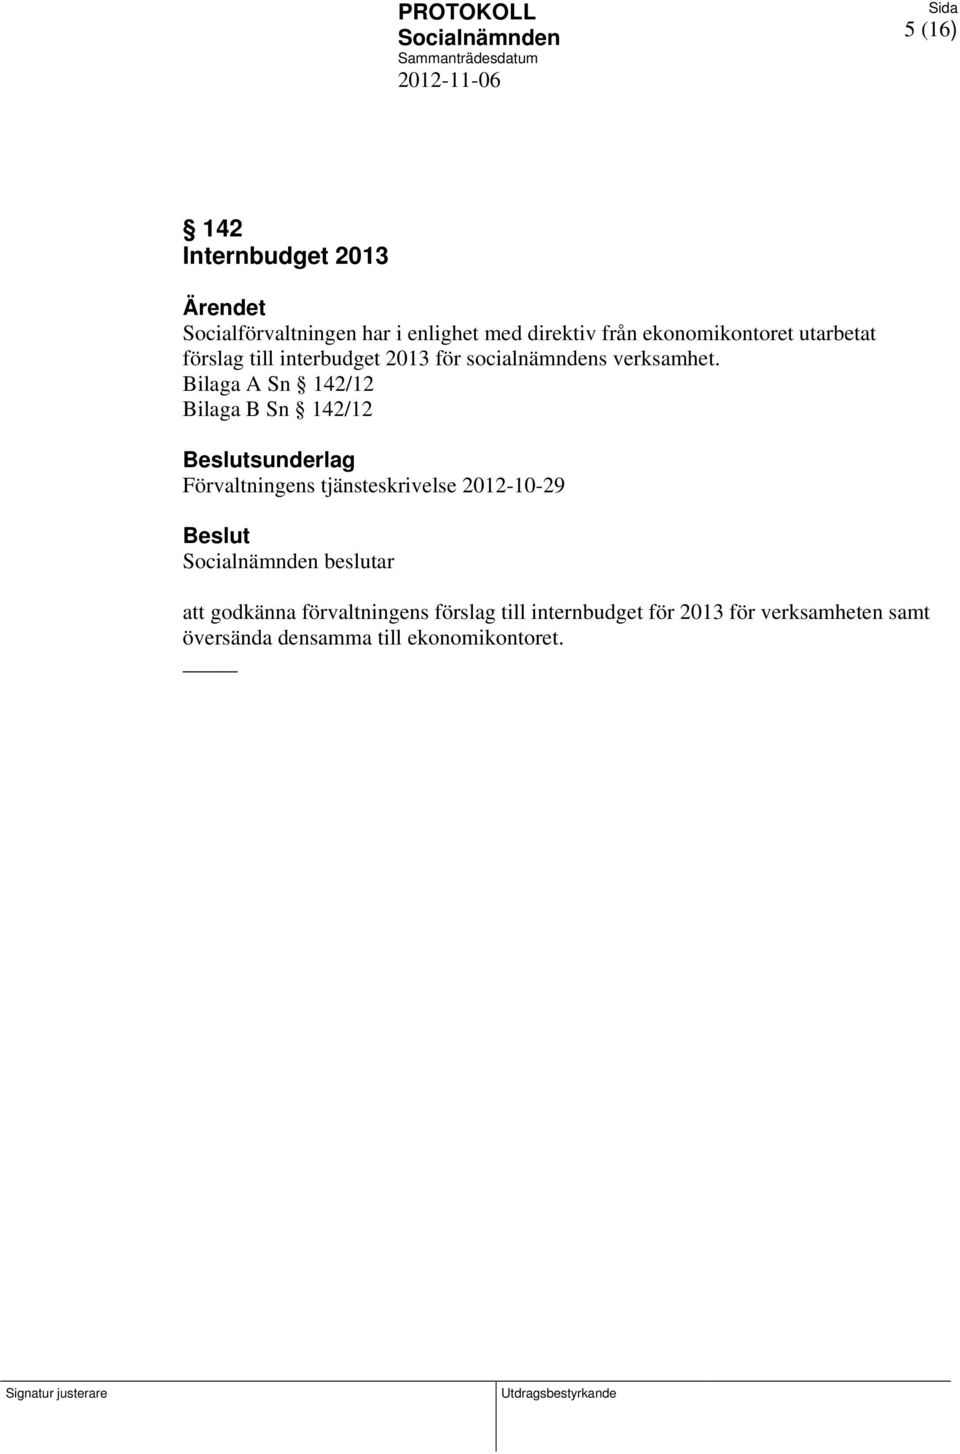 Bilaga A Sn 142/12 Bilaga B Sn 142/12 sunderlag Förvaltningens tjänsteskrivelse 2012-10-29